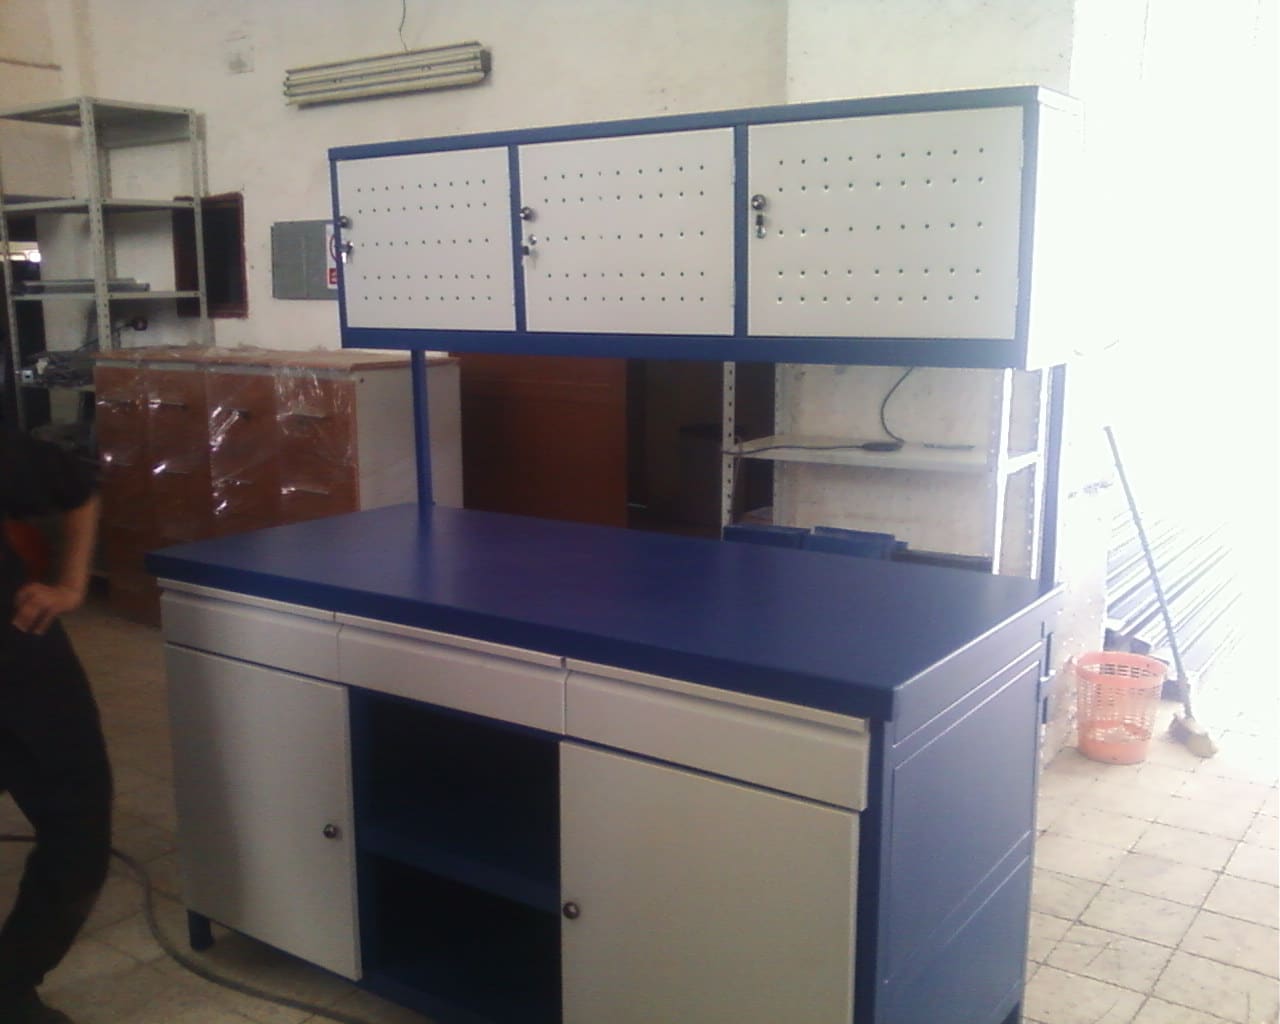 workshop storage cabinets